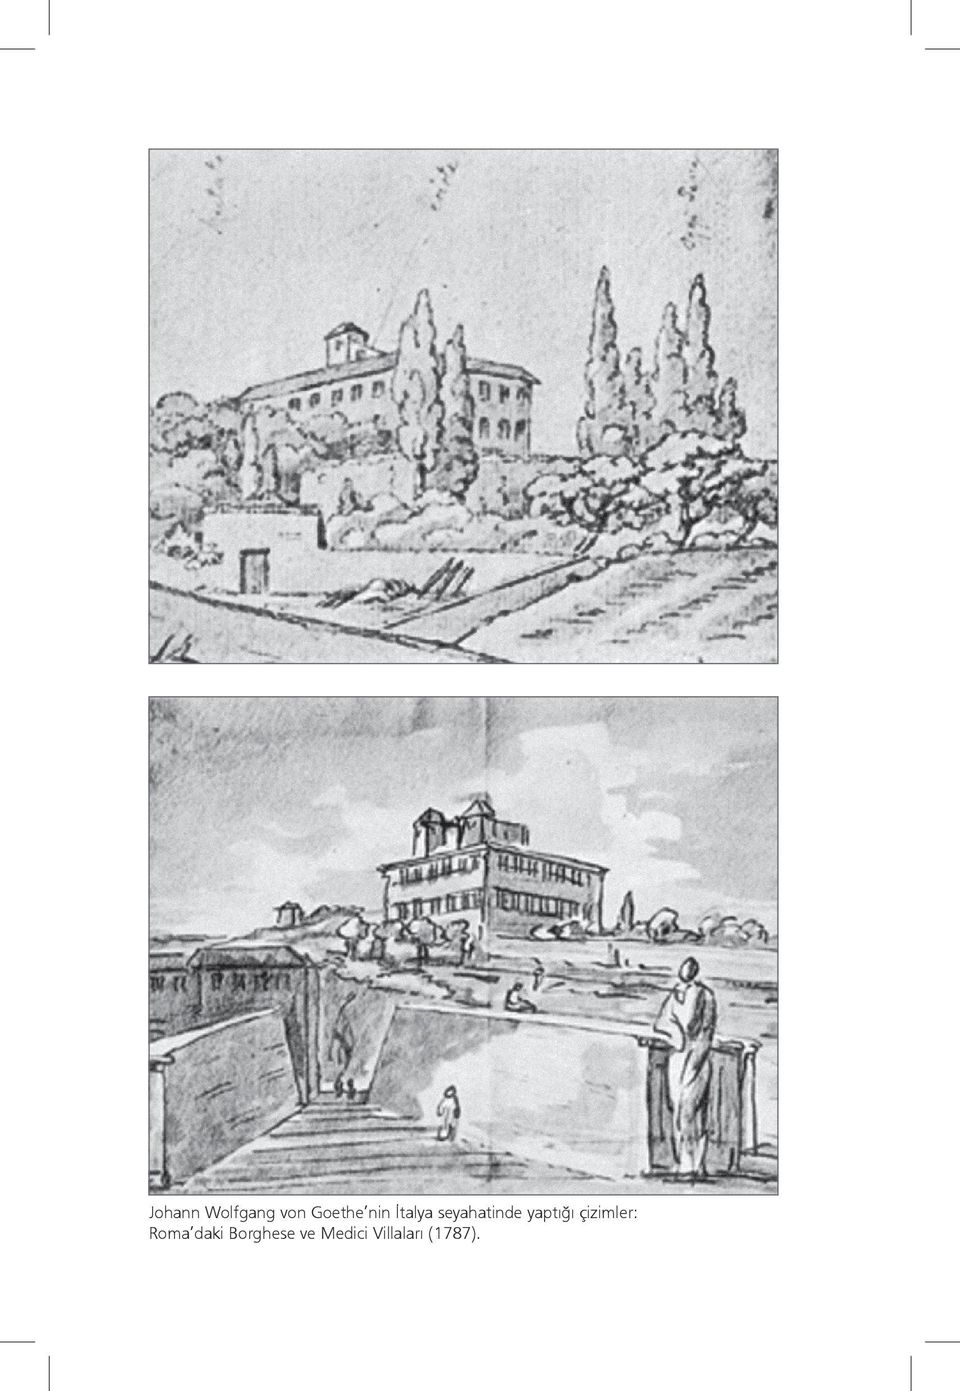 yaptığı çizimler: Roma daki